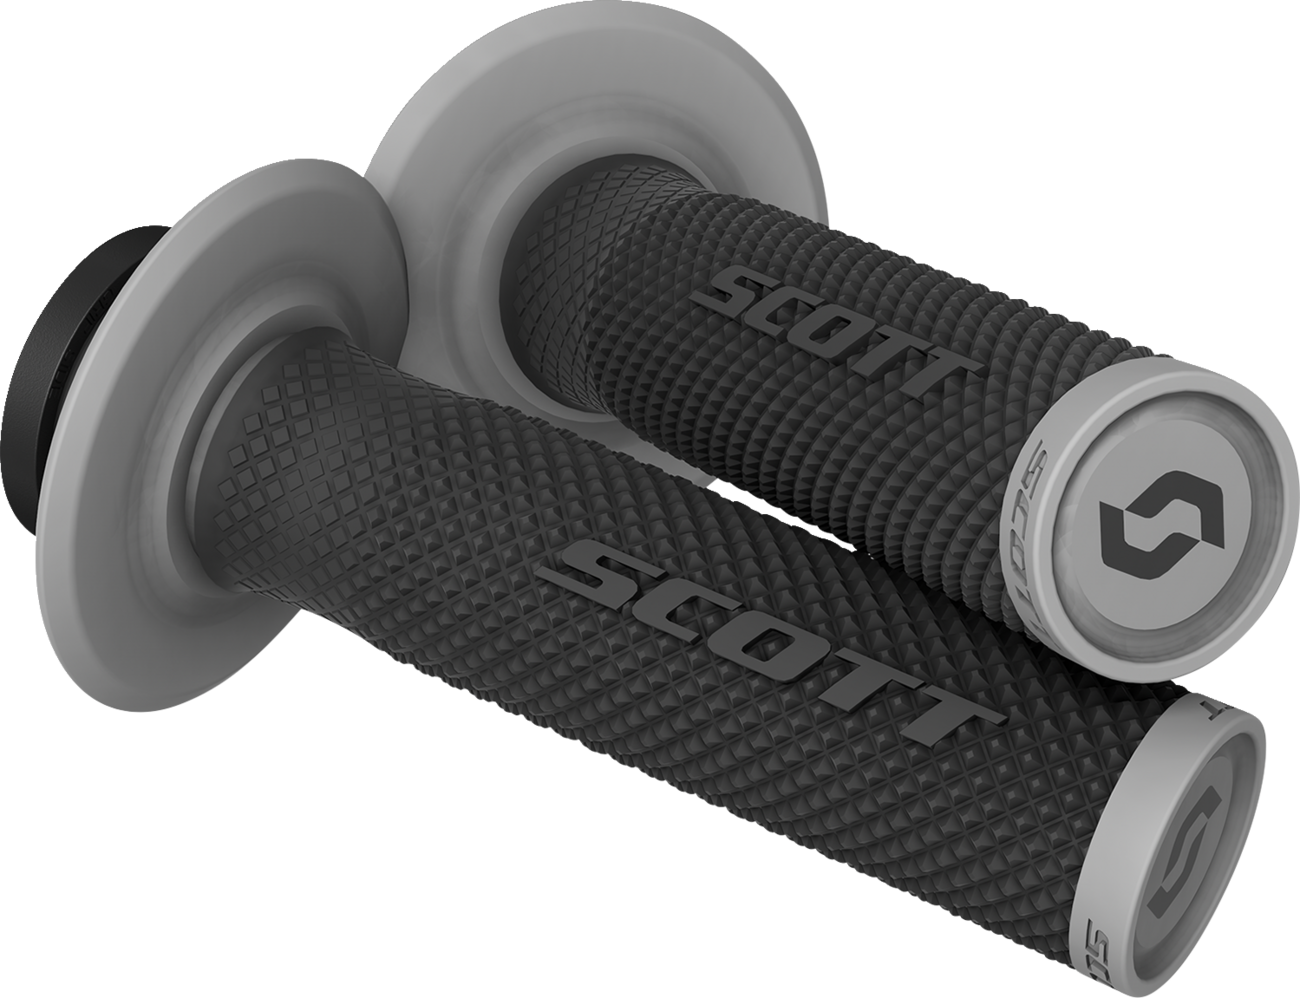 SCOTT Grips - SX II - Lock-On - Black/Gray 292452-100122